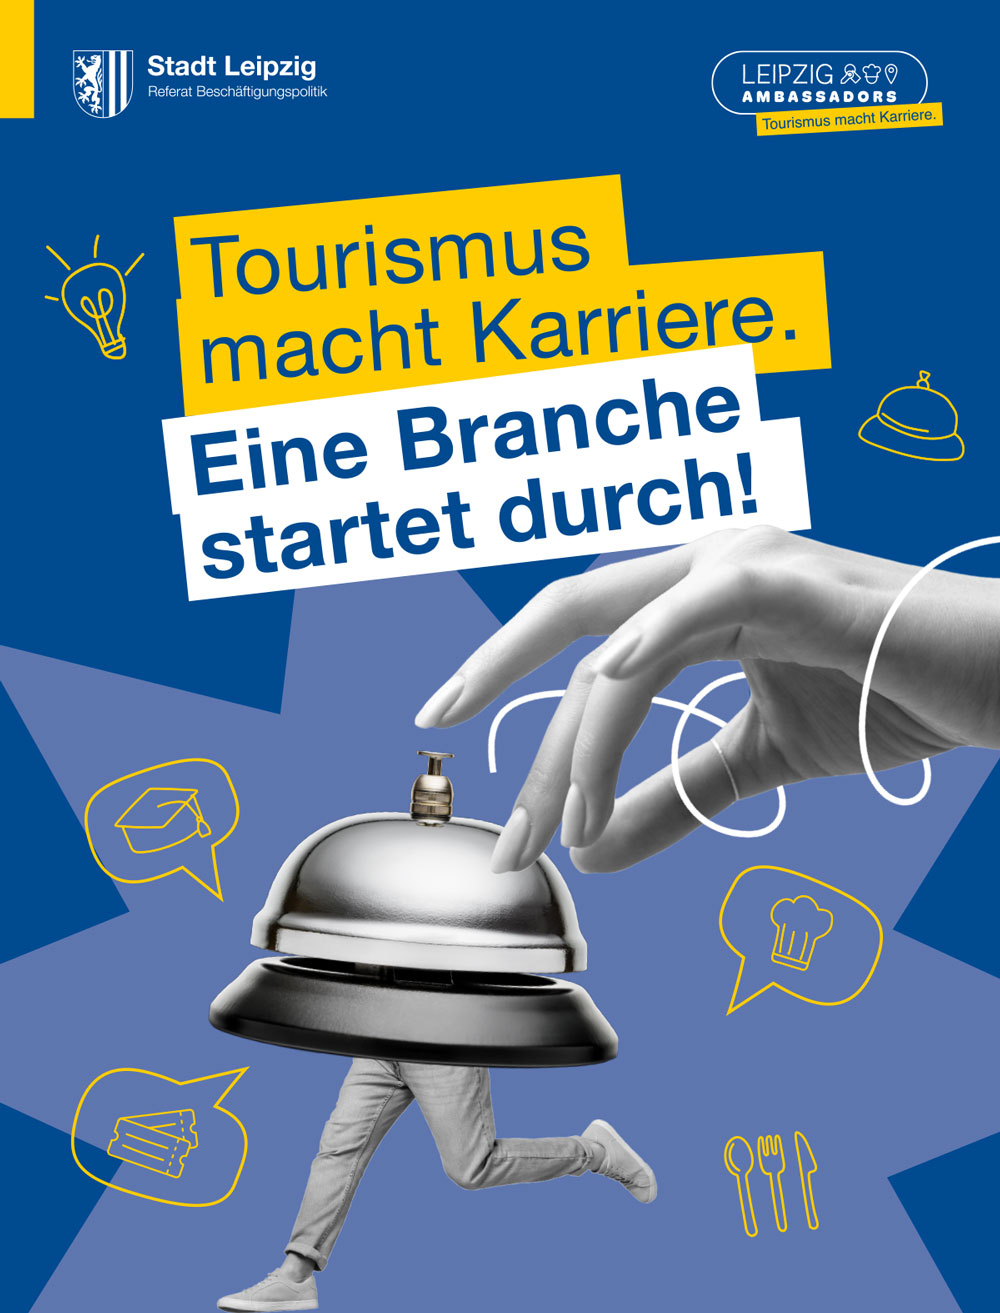 Broschüre der Kampagne Leipzig Ambassadors. Auf der Broschüre steht: Tourismus macht Karriere. Eine Branche startet durch!